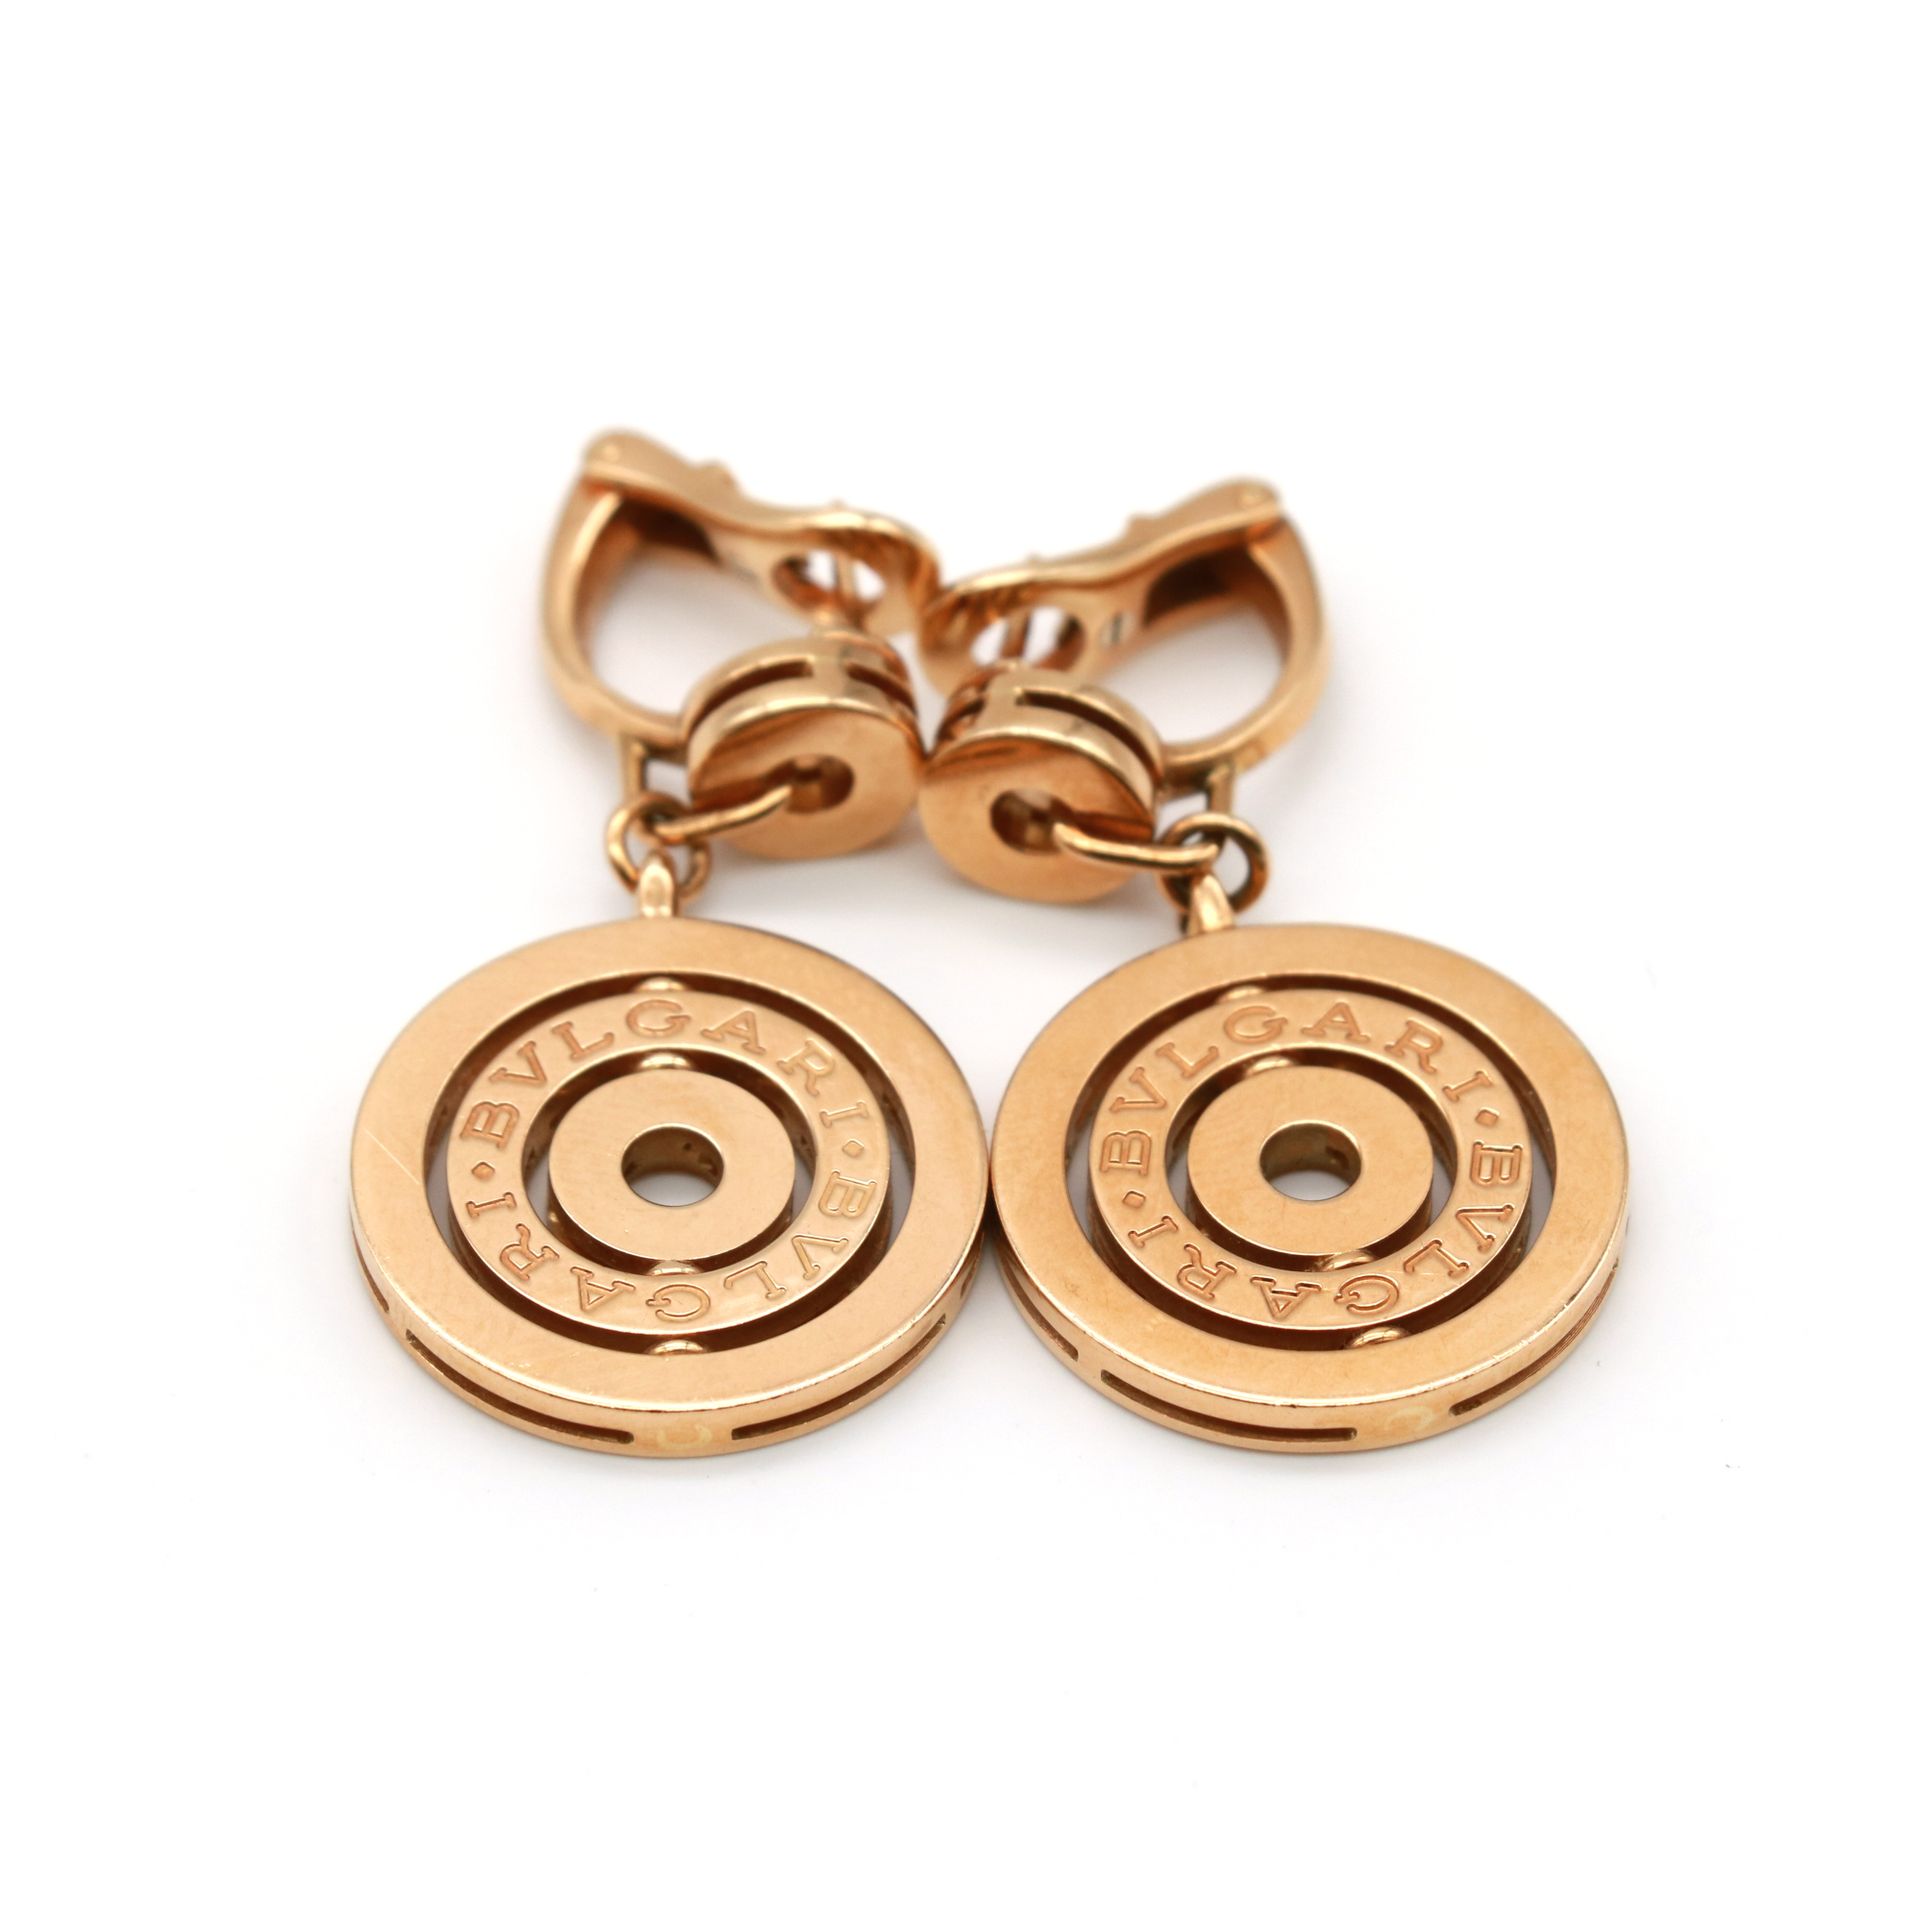 Bulgari , Astrale 18K黄金半铰链式耳环，带圆形吊坠

刻有宝格丽字样并签名

约2000年

重量 : 23,9 g